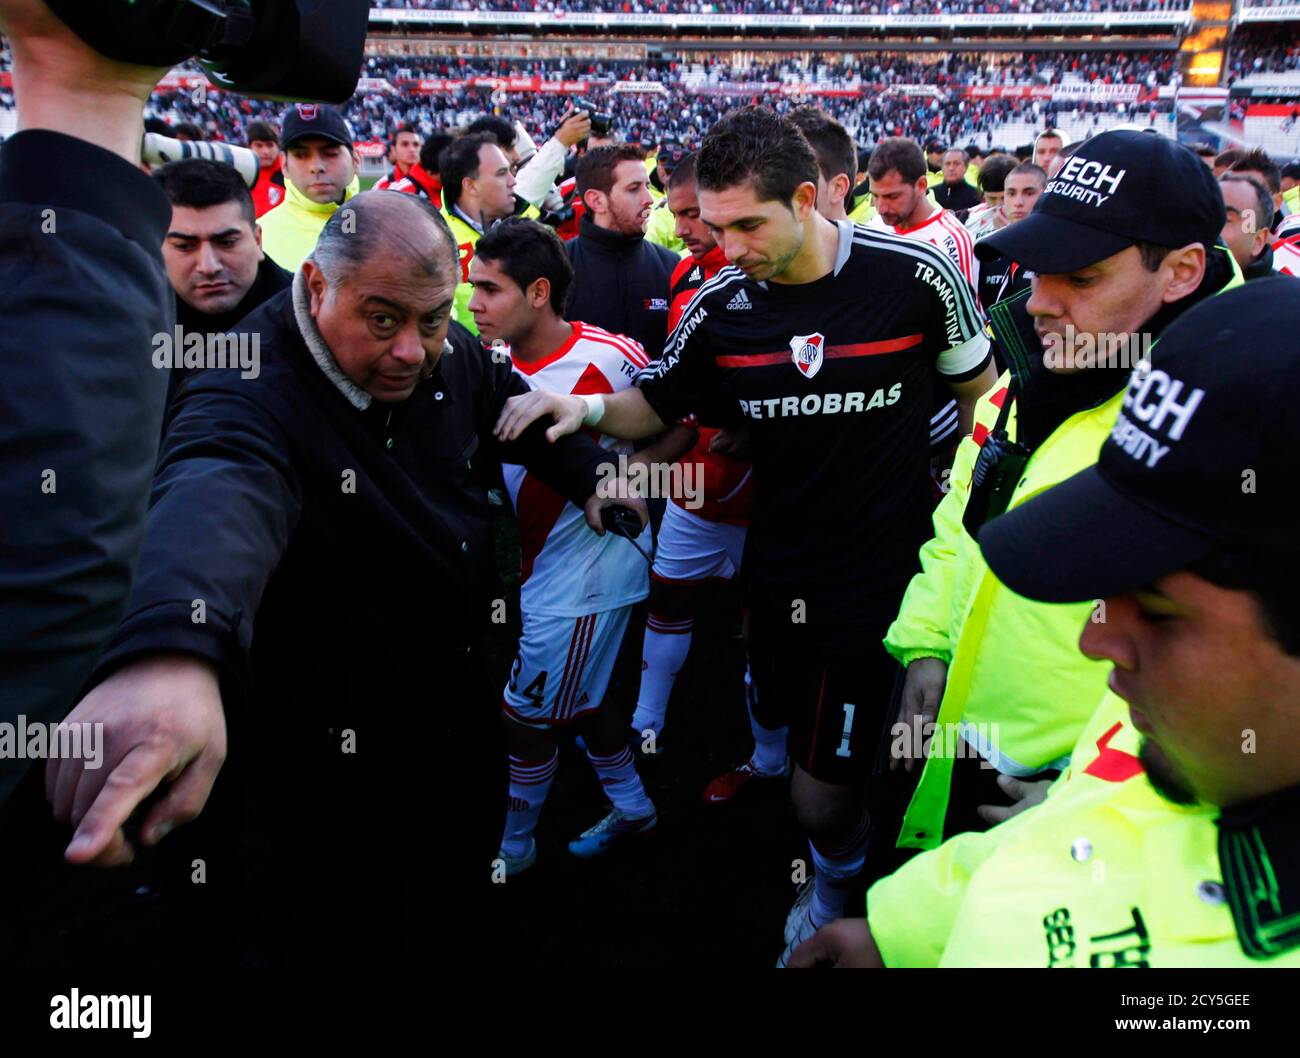 El capitán de River Plate, el portero Juan (C) y los compañeros de equipo abandonan el campo escoltado por oficiales de seguridad al final de su partido de